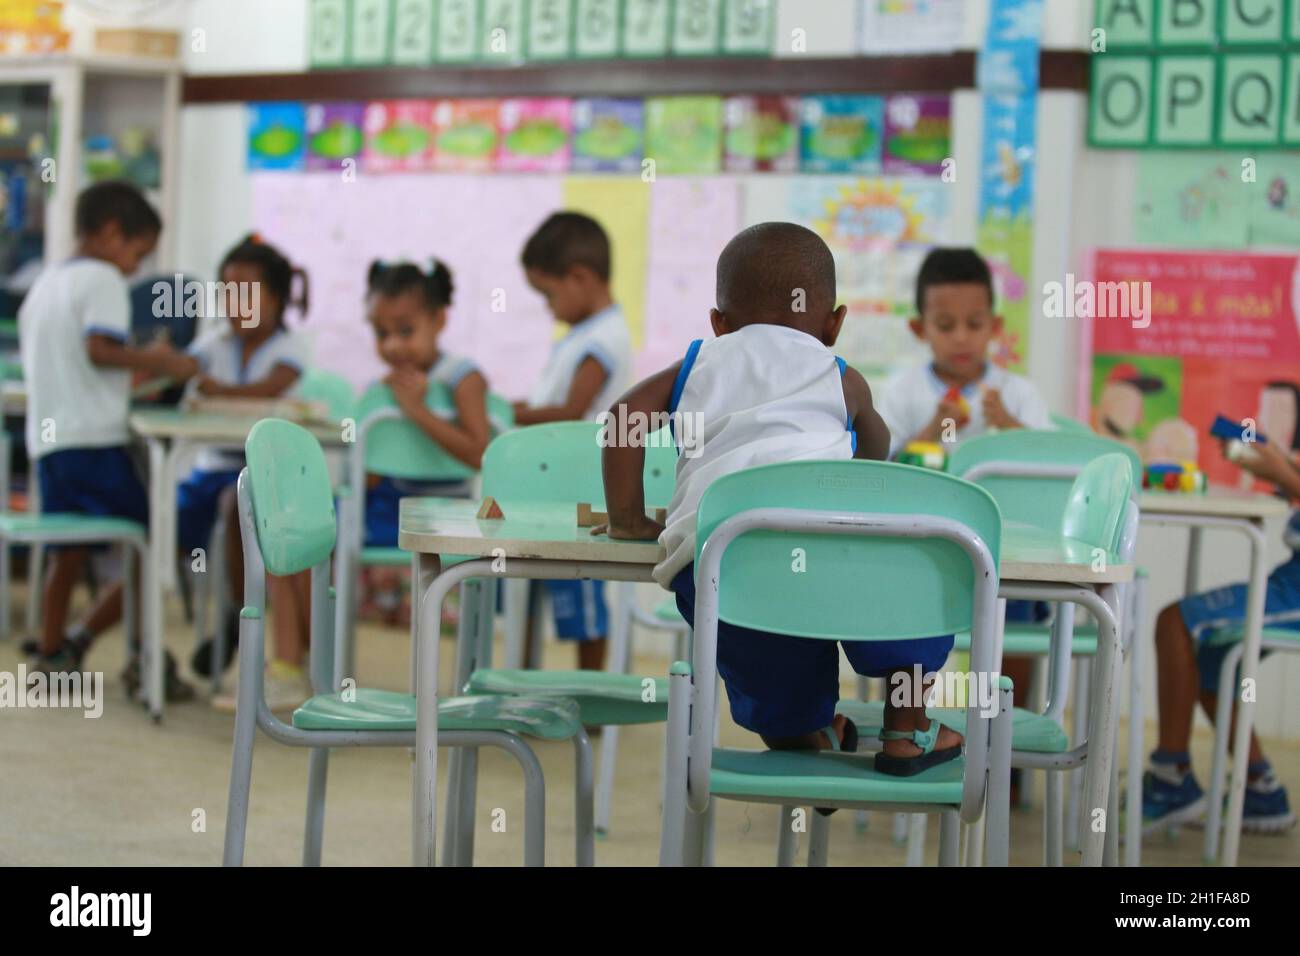 salvador, bahia / brazil - may19, 2016: children are seen in a classroom at the Tereza Mata Pires Municipal Center, in the Alto do Cabrito neighborhoo Stock Photo